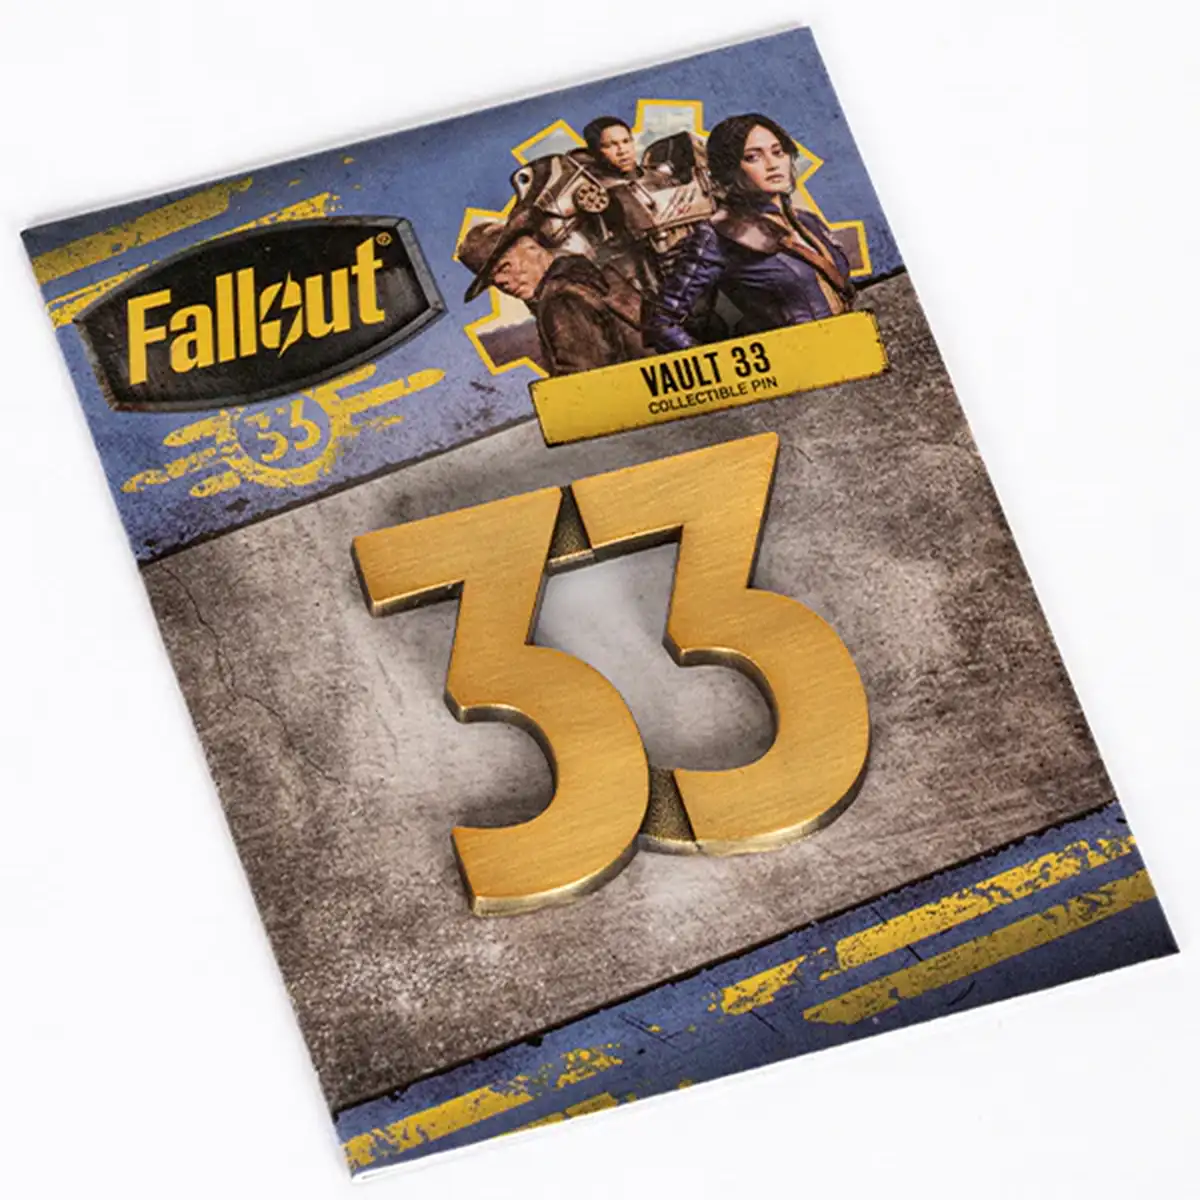 Fallout Pin "Vault 33" Image 3